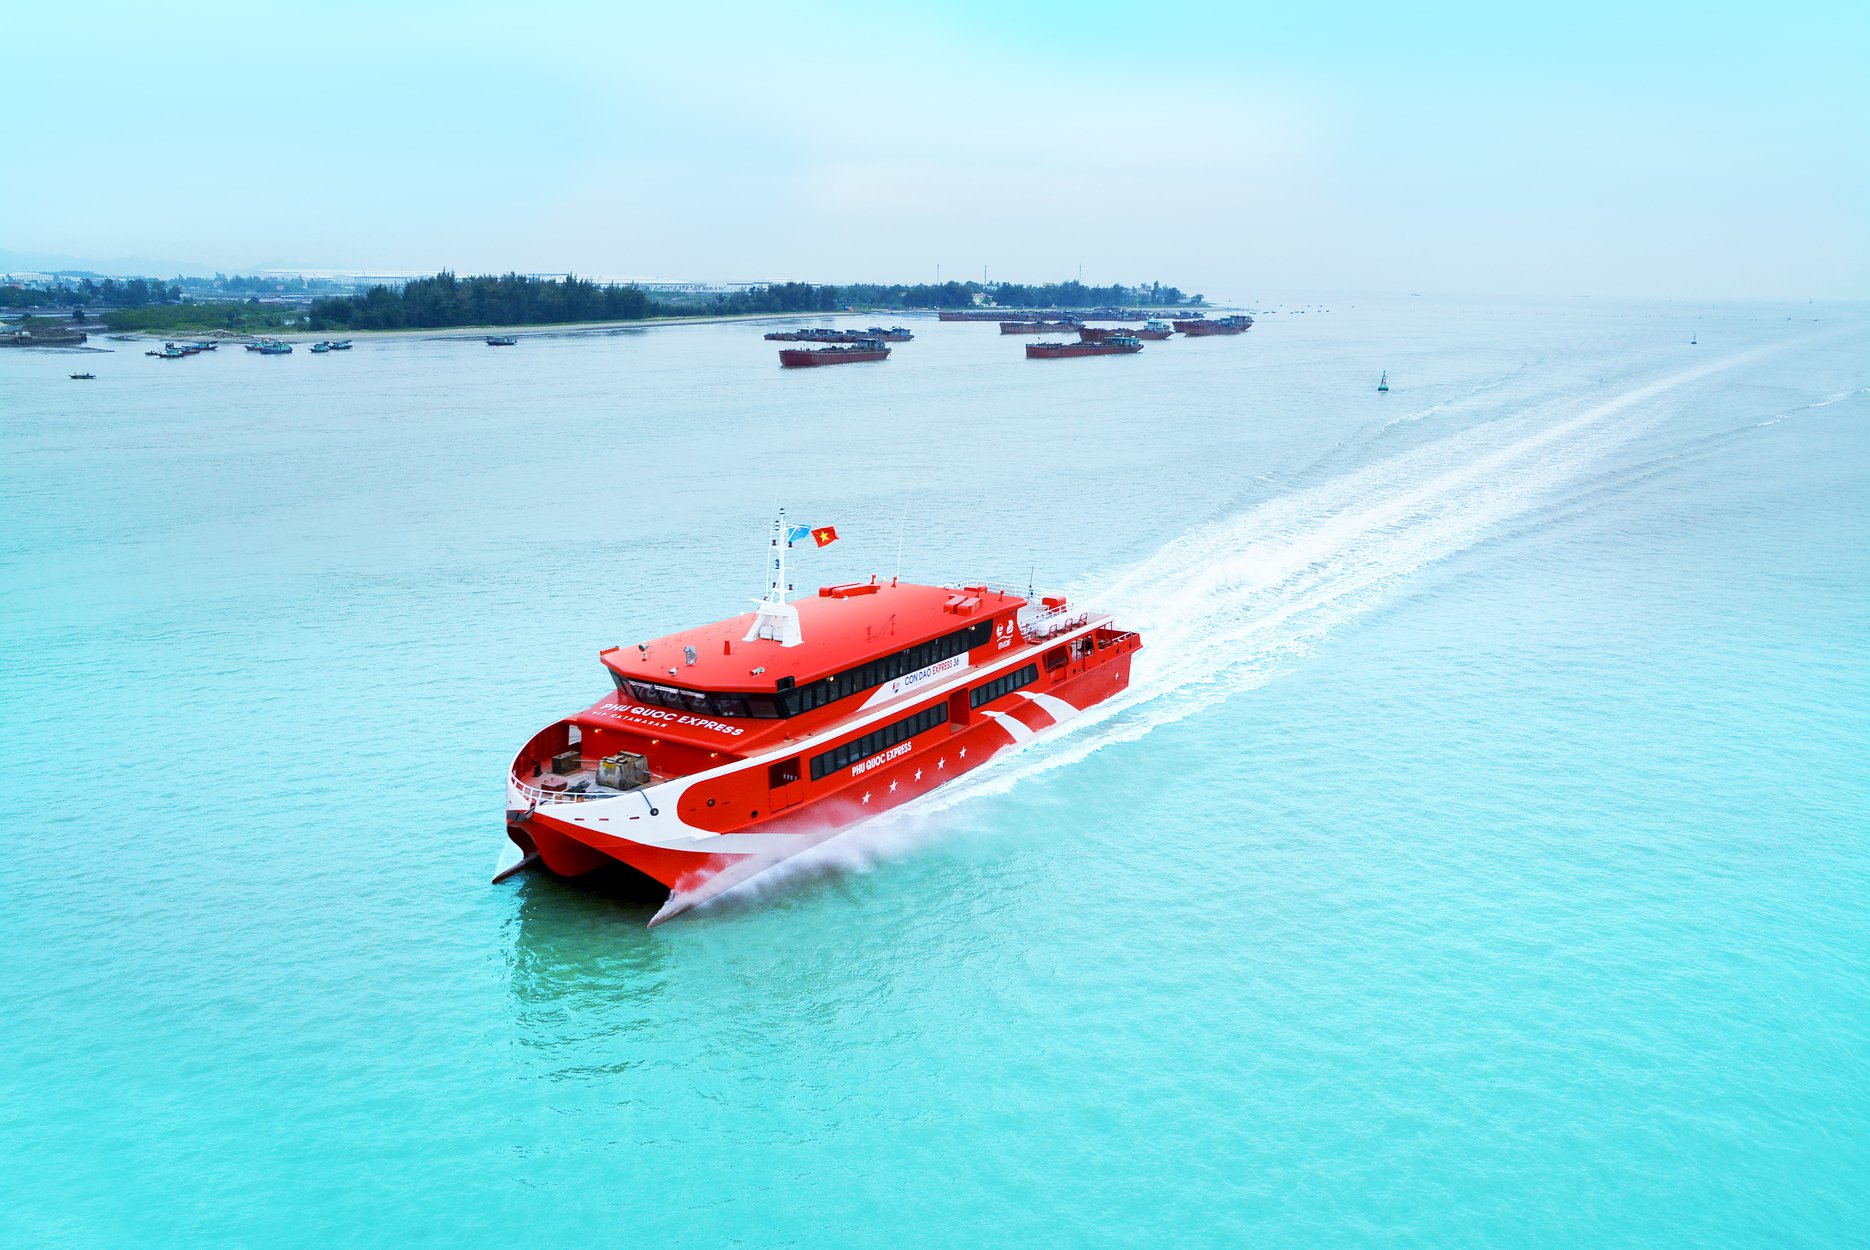 Tàu cao tốc Côn Đảo Express màu đỏ đang lướt nhanh trên biển xanh